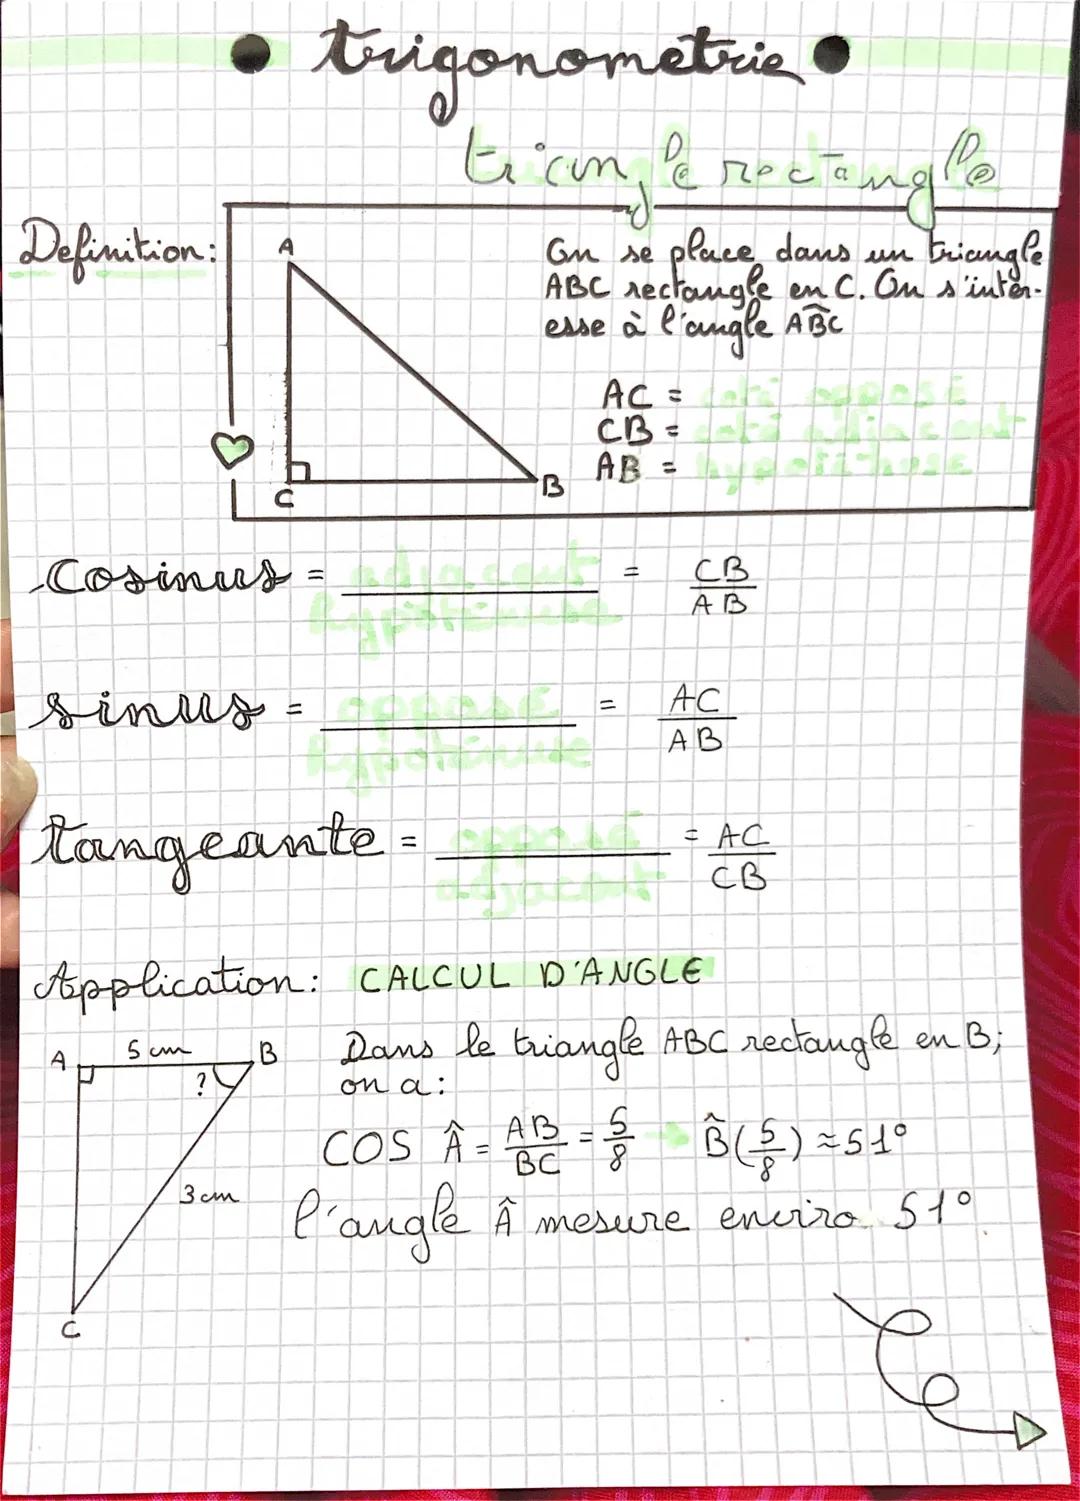 Definition:
Cosinus =
A
C
?
trigonometrie •
ticon, e receng
3cm
B
Pe
triangle
On se place dans un
ABC rectangle en C. On s'inter-
esse à l'a